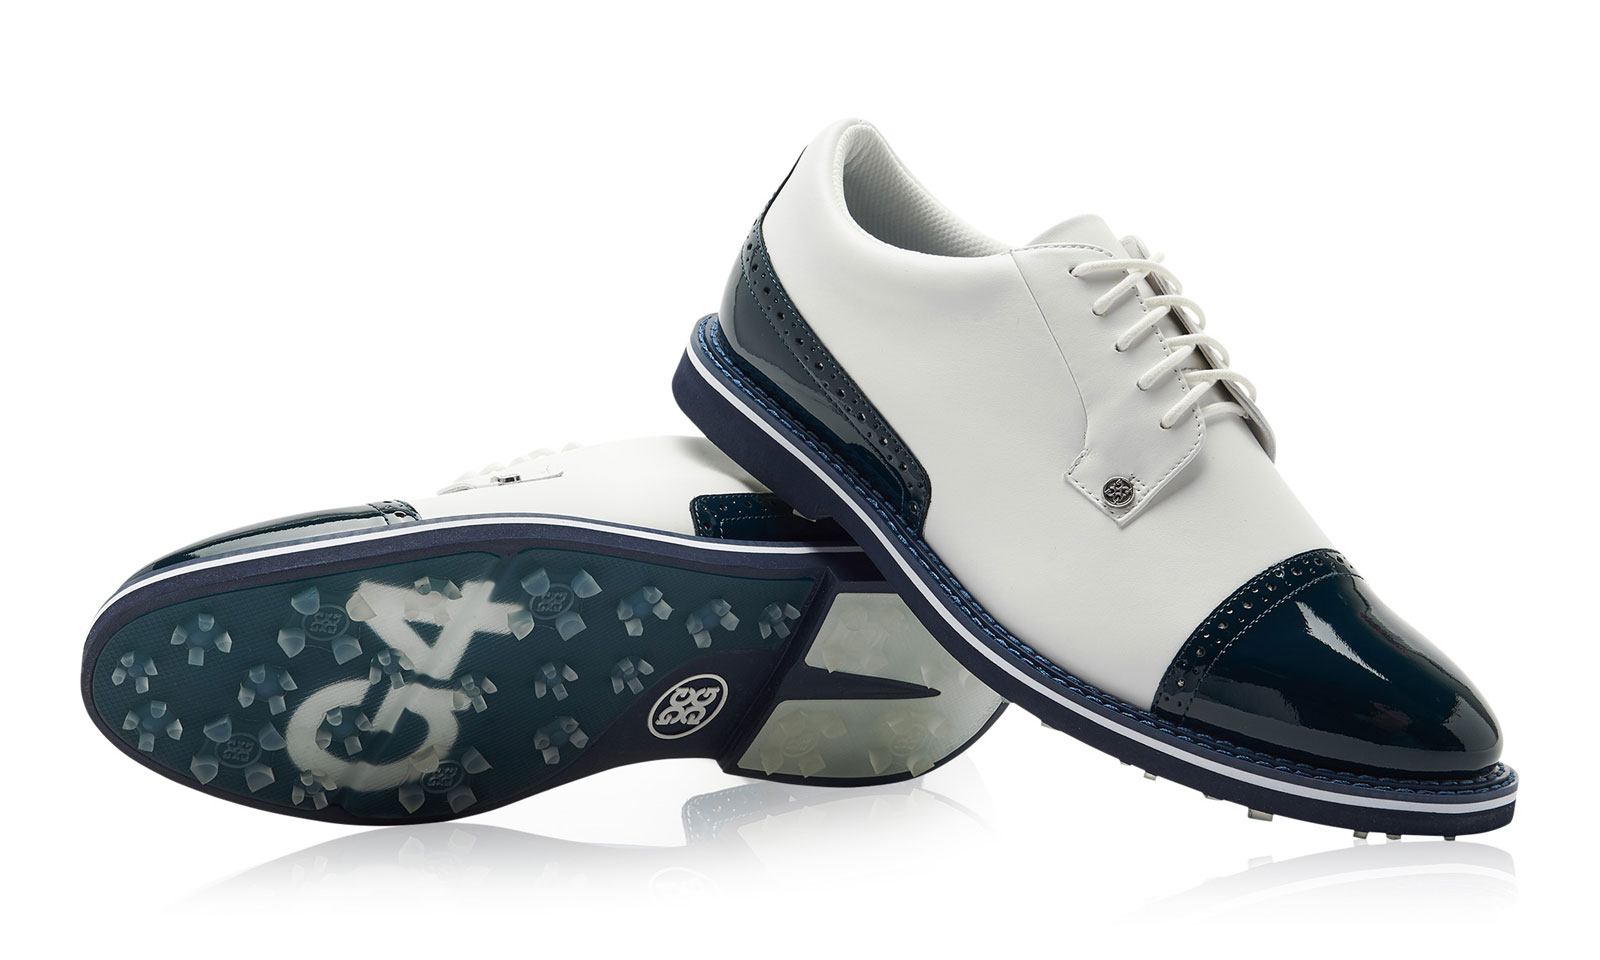 Classic Golf Shoe